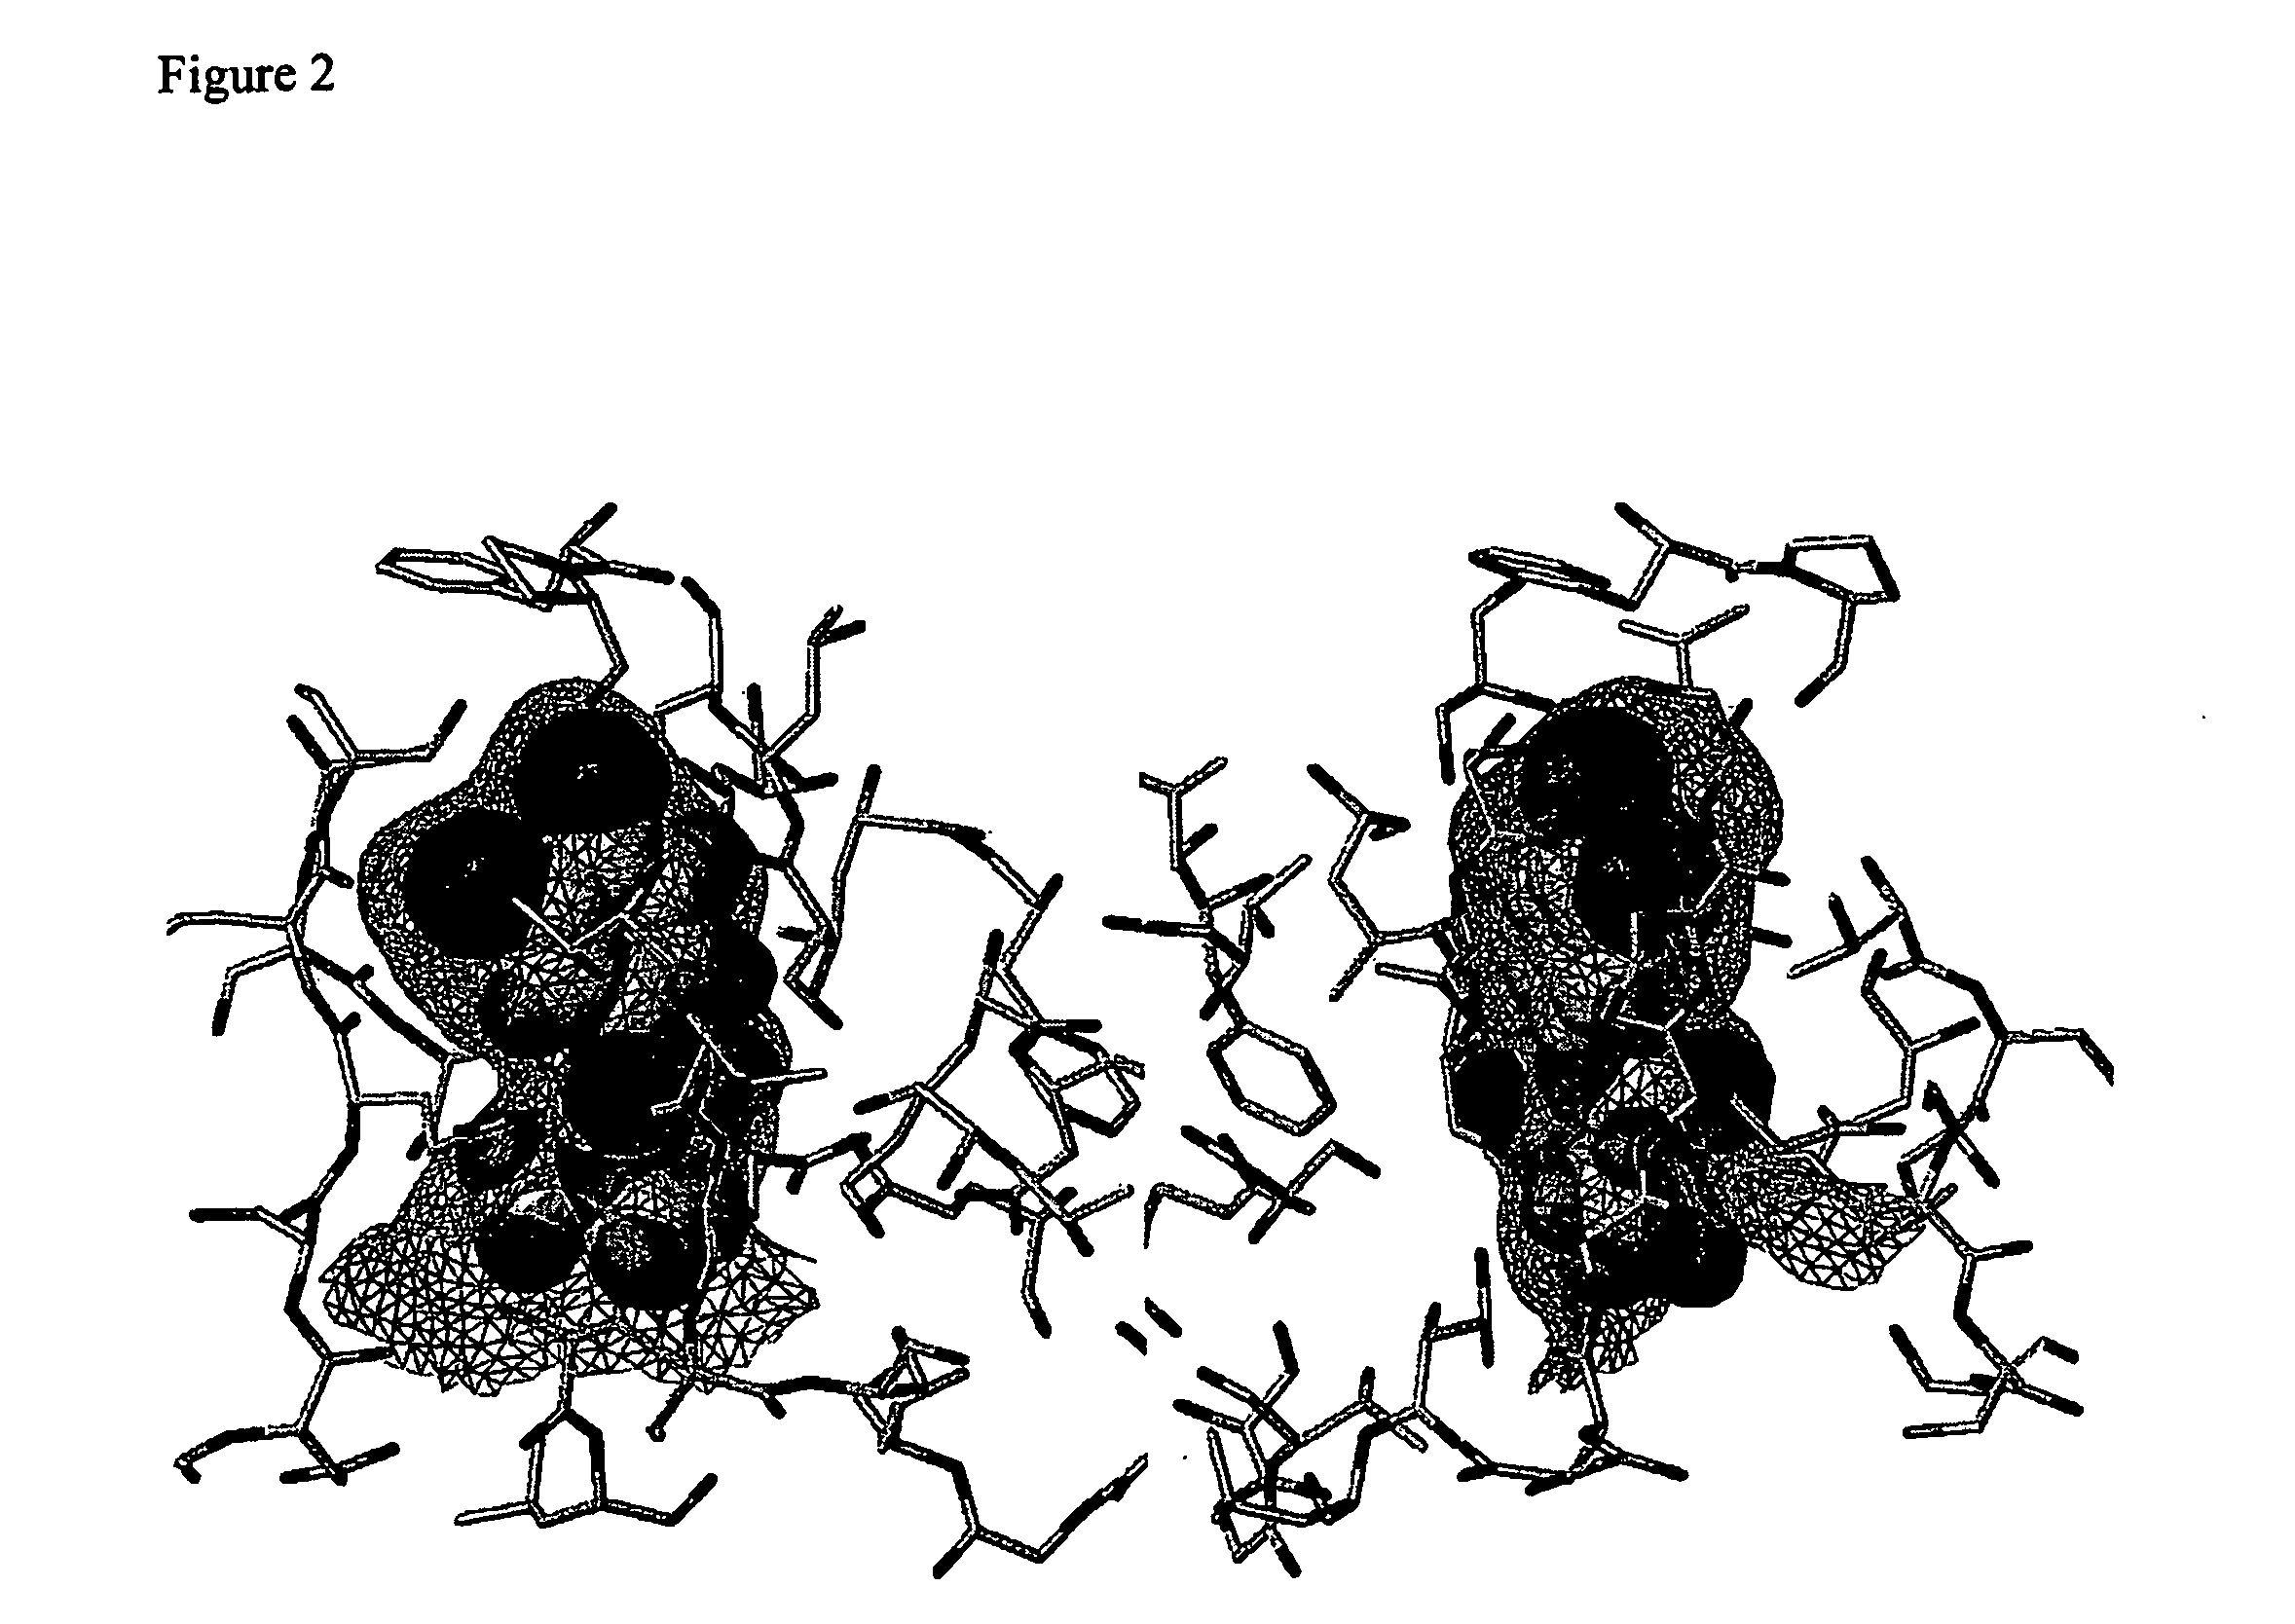 Use of urea variants as affinity ligands